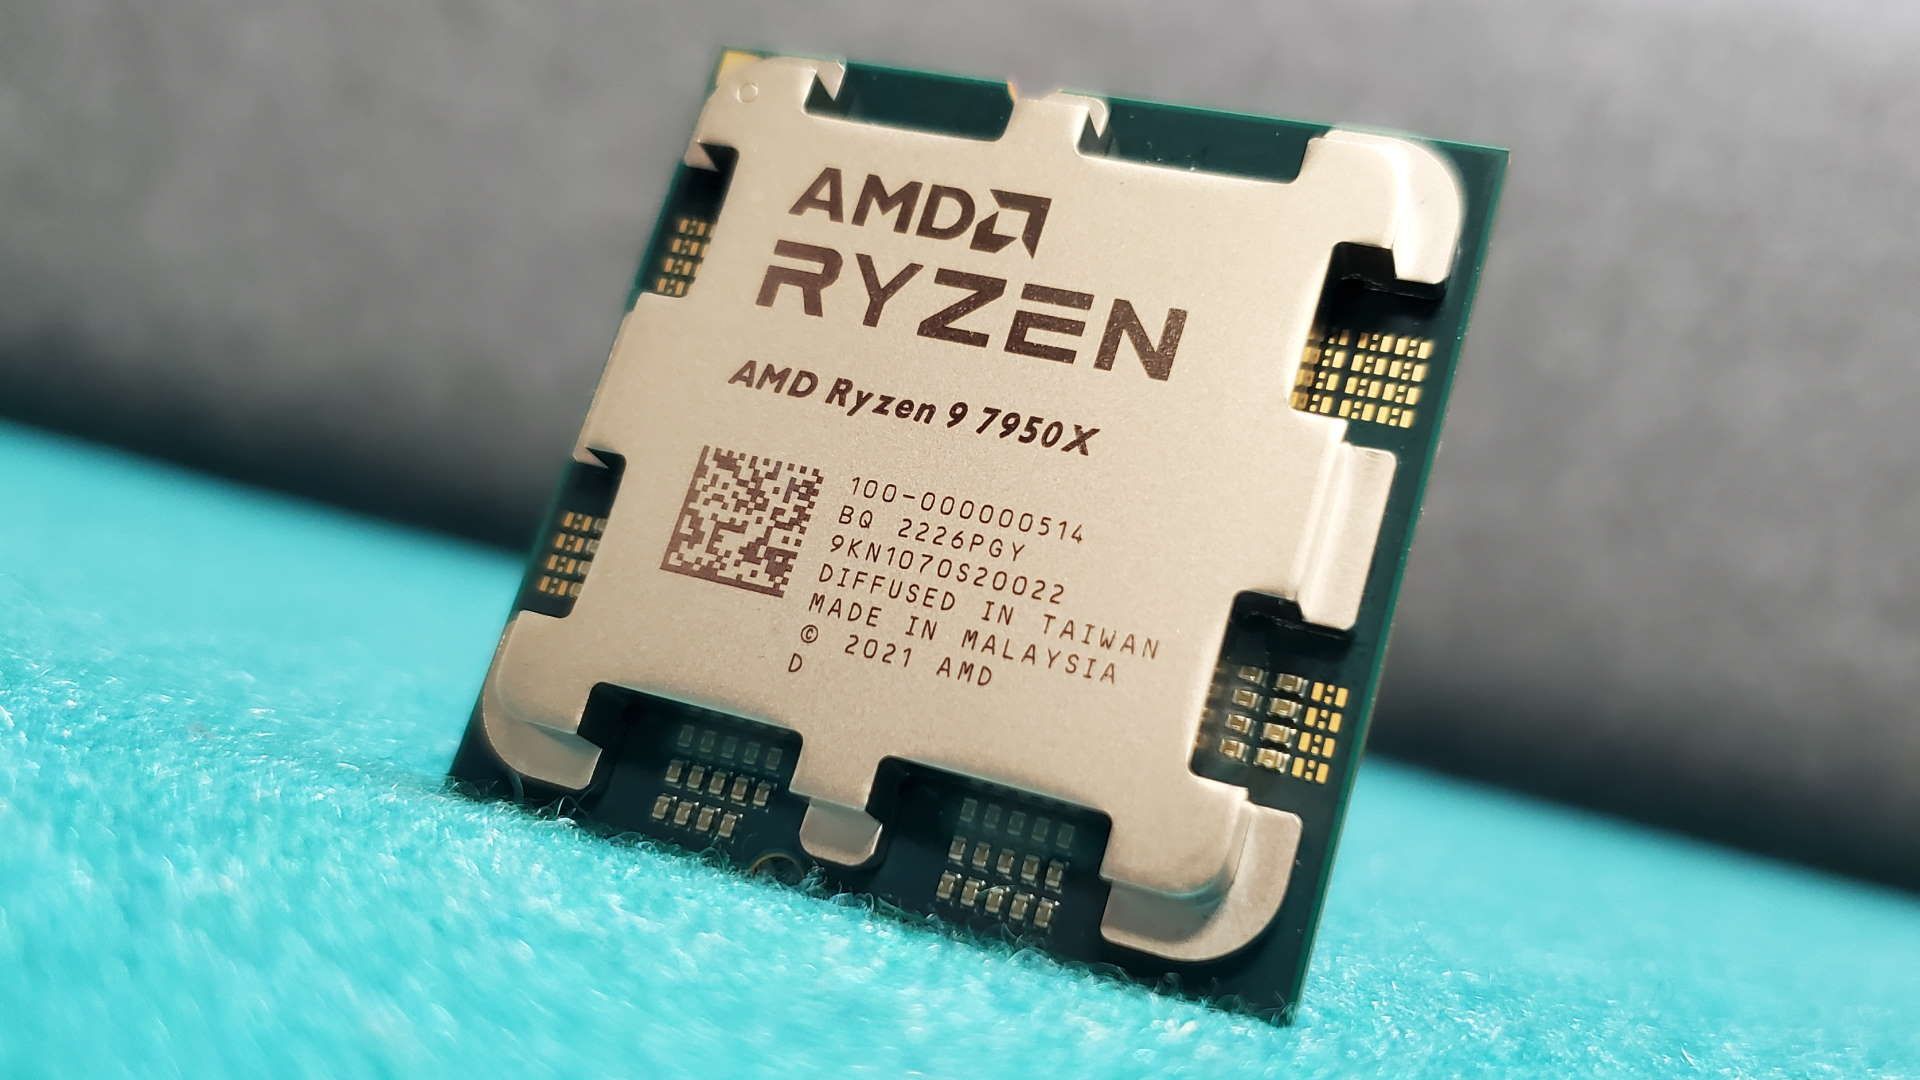 پردازنده پرچمدار AMD Ryzen 9 7950X برای کار تولید محتوا راهنمای خرید کامپیوتر گیمینگ حرفه ای تیر 1403 ایتی مایتی